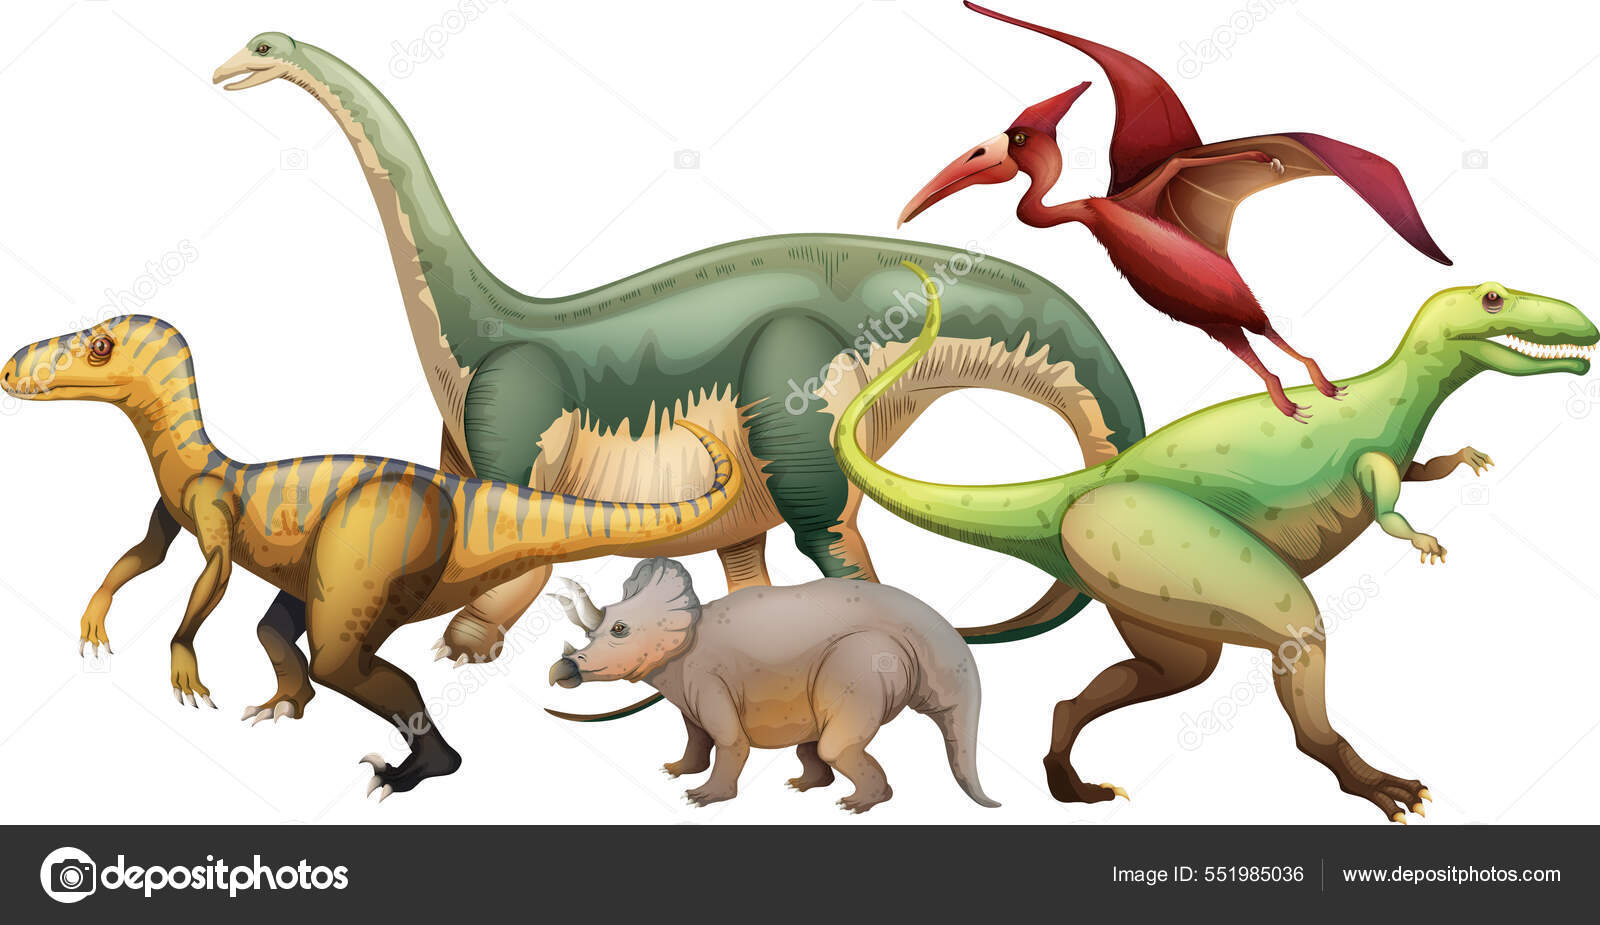 Vetores de Desenho De Dinossauro Esboço De Mão Da Ilustração De  Velociraptor Preto E Branco e mais imagens de Velociraptor - iStock